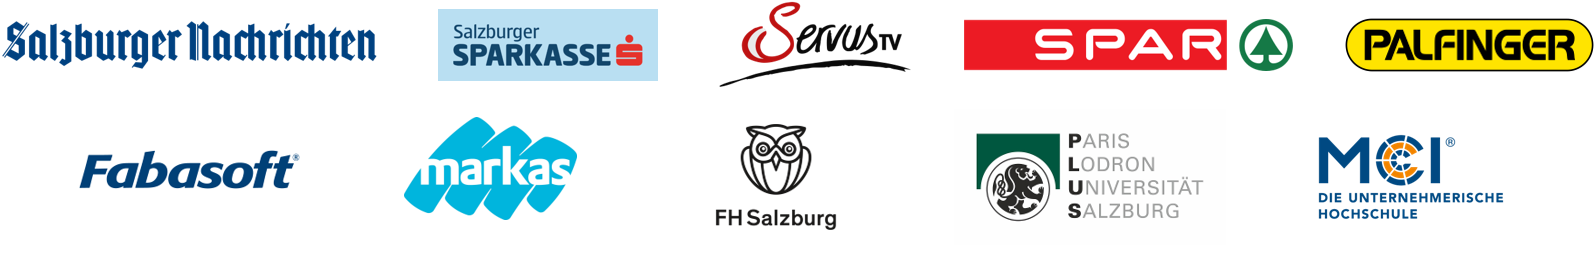 Partner Logoleiste Salzburger Wirtschaftsforum